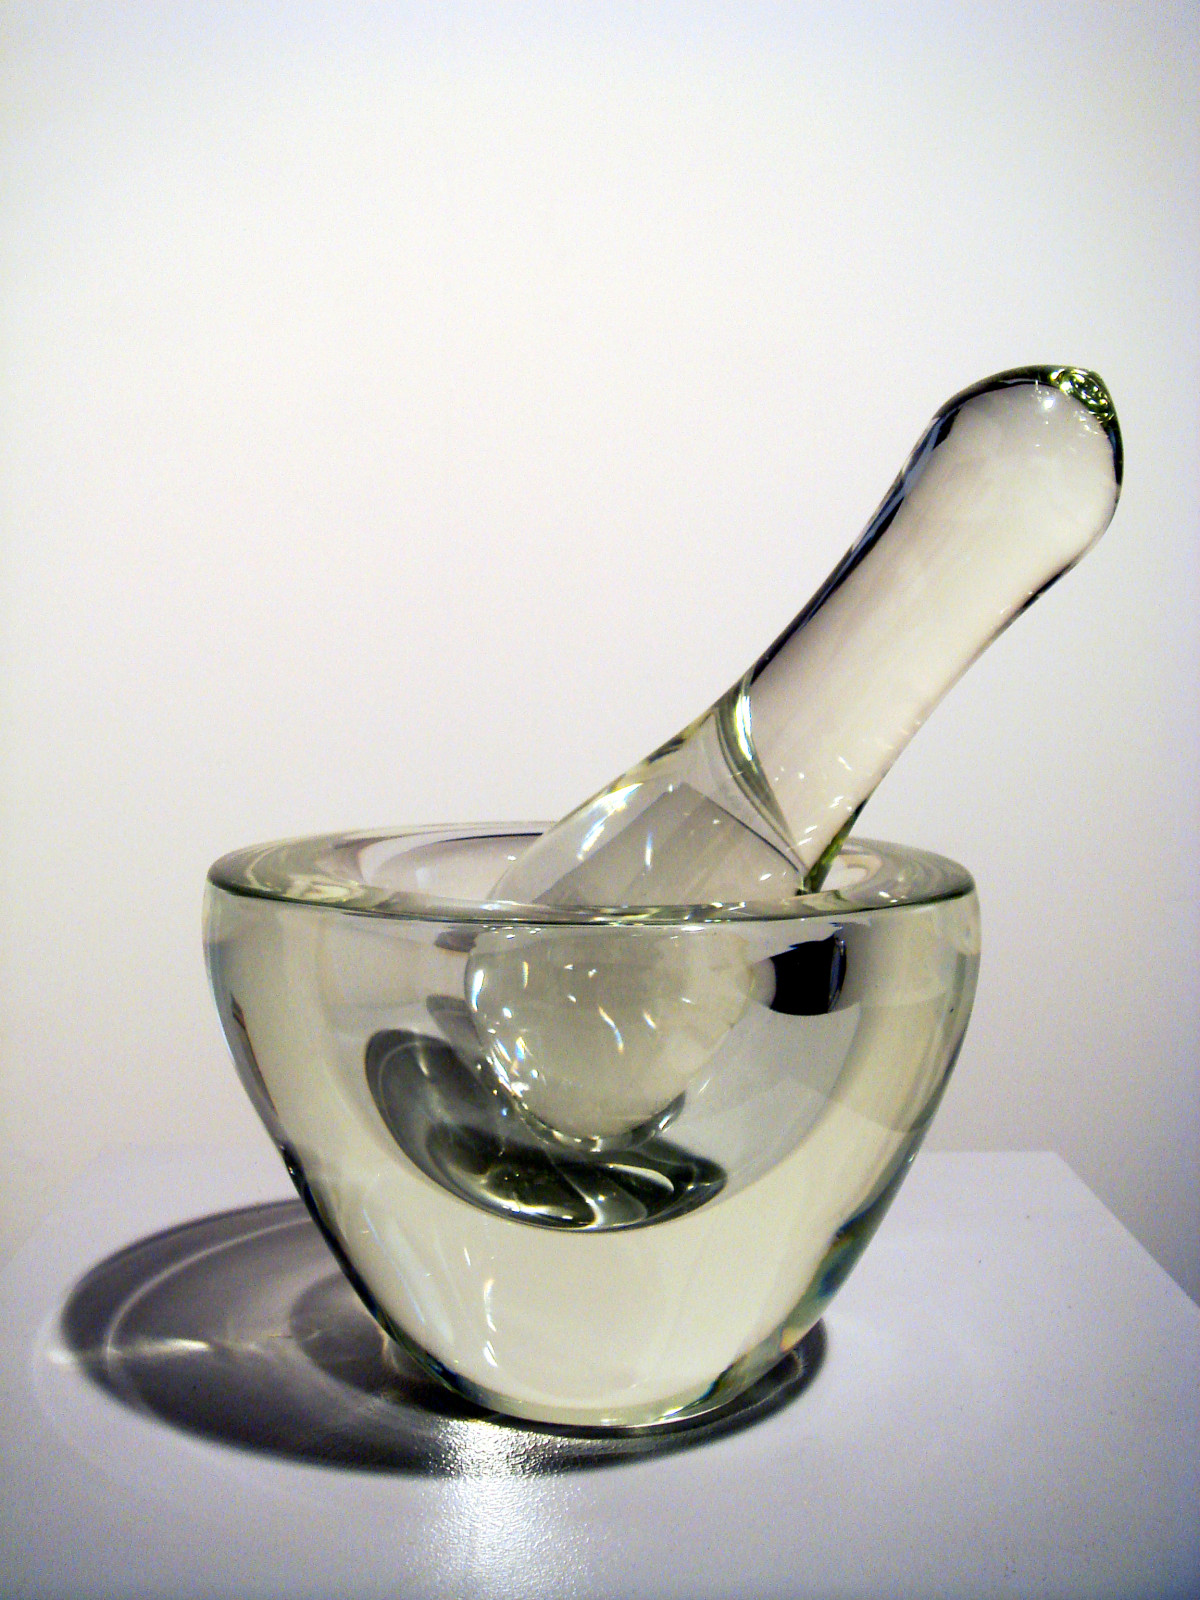 Tony Cragg, ‘Mortar & Pestel’, 2009, Murano glass